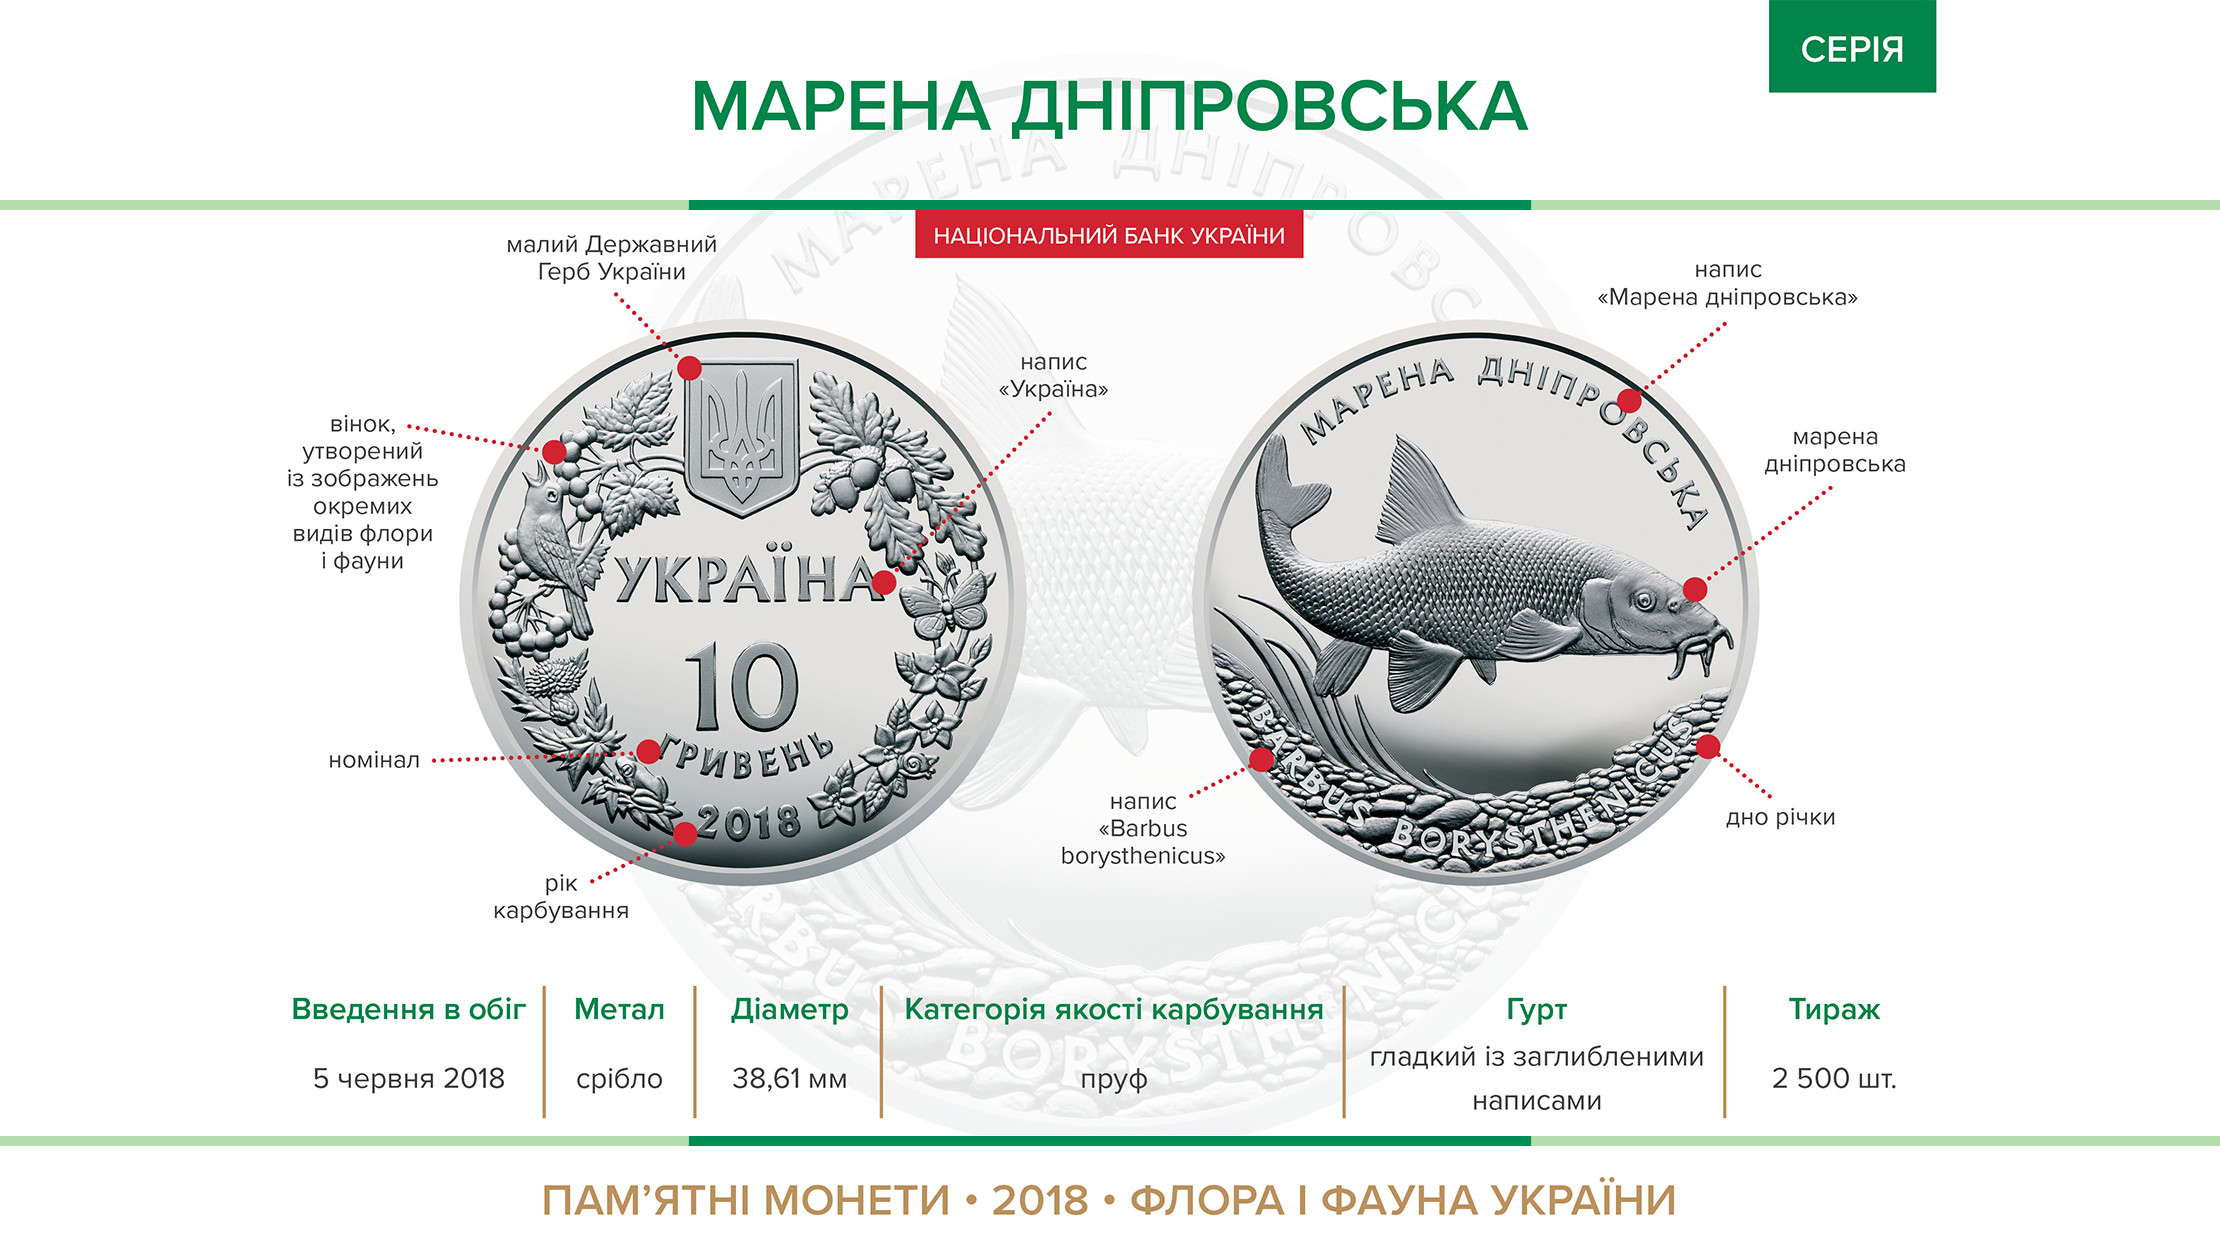 Пам'ятна монета "Марена дніпровська" (срібло) вводиться в обіг з 05 червня 2018 року